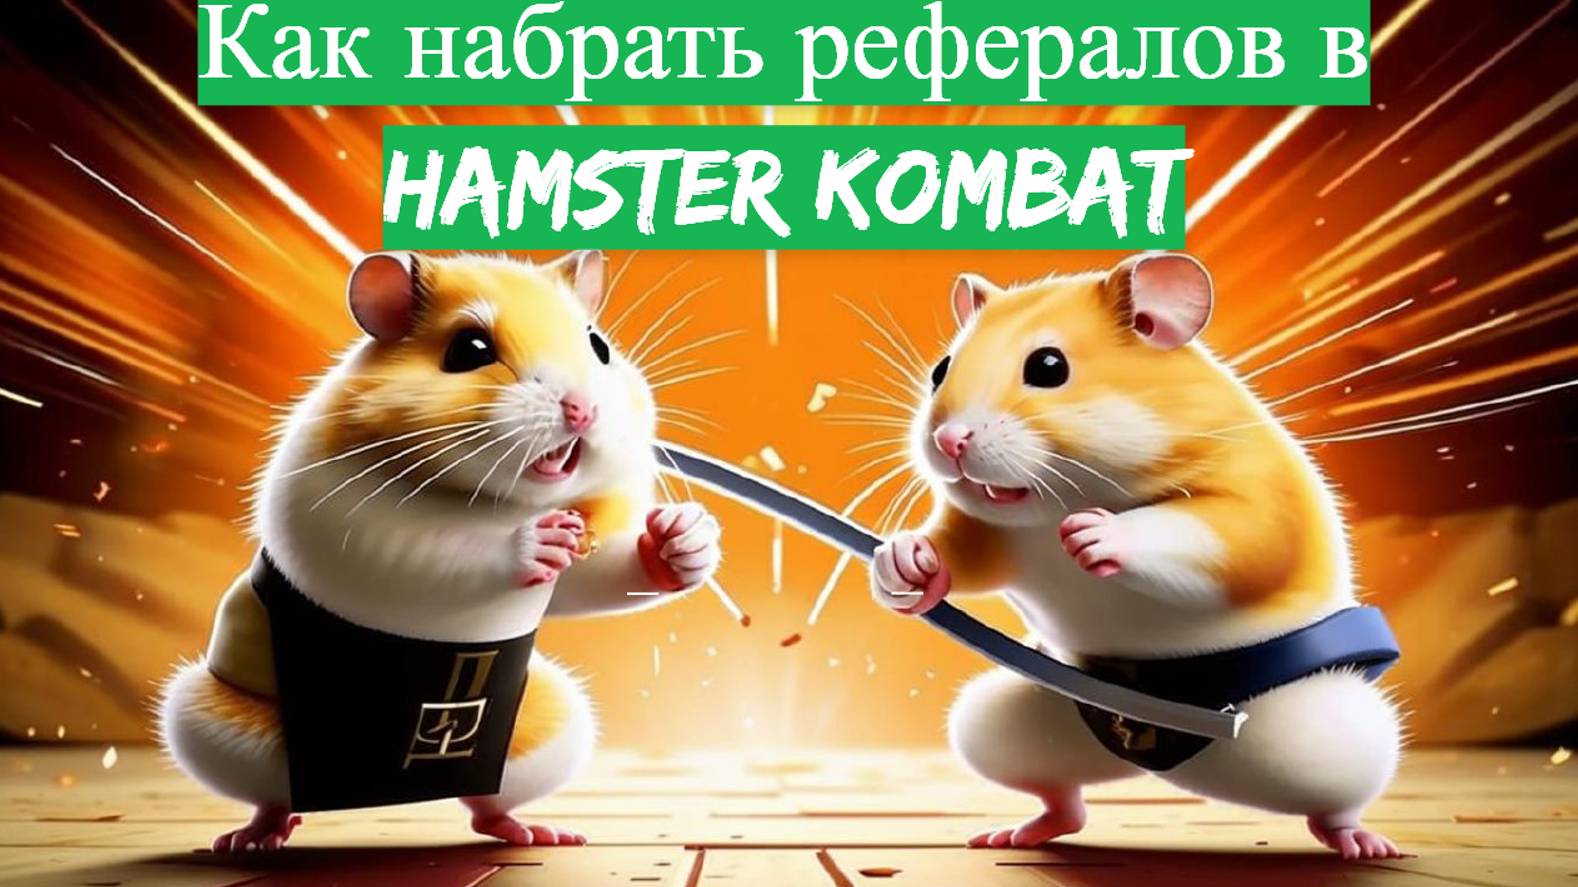 Как Набрать Рефералов в Игру Hamster Kombat: Пошаговое Руководство!